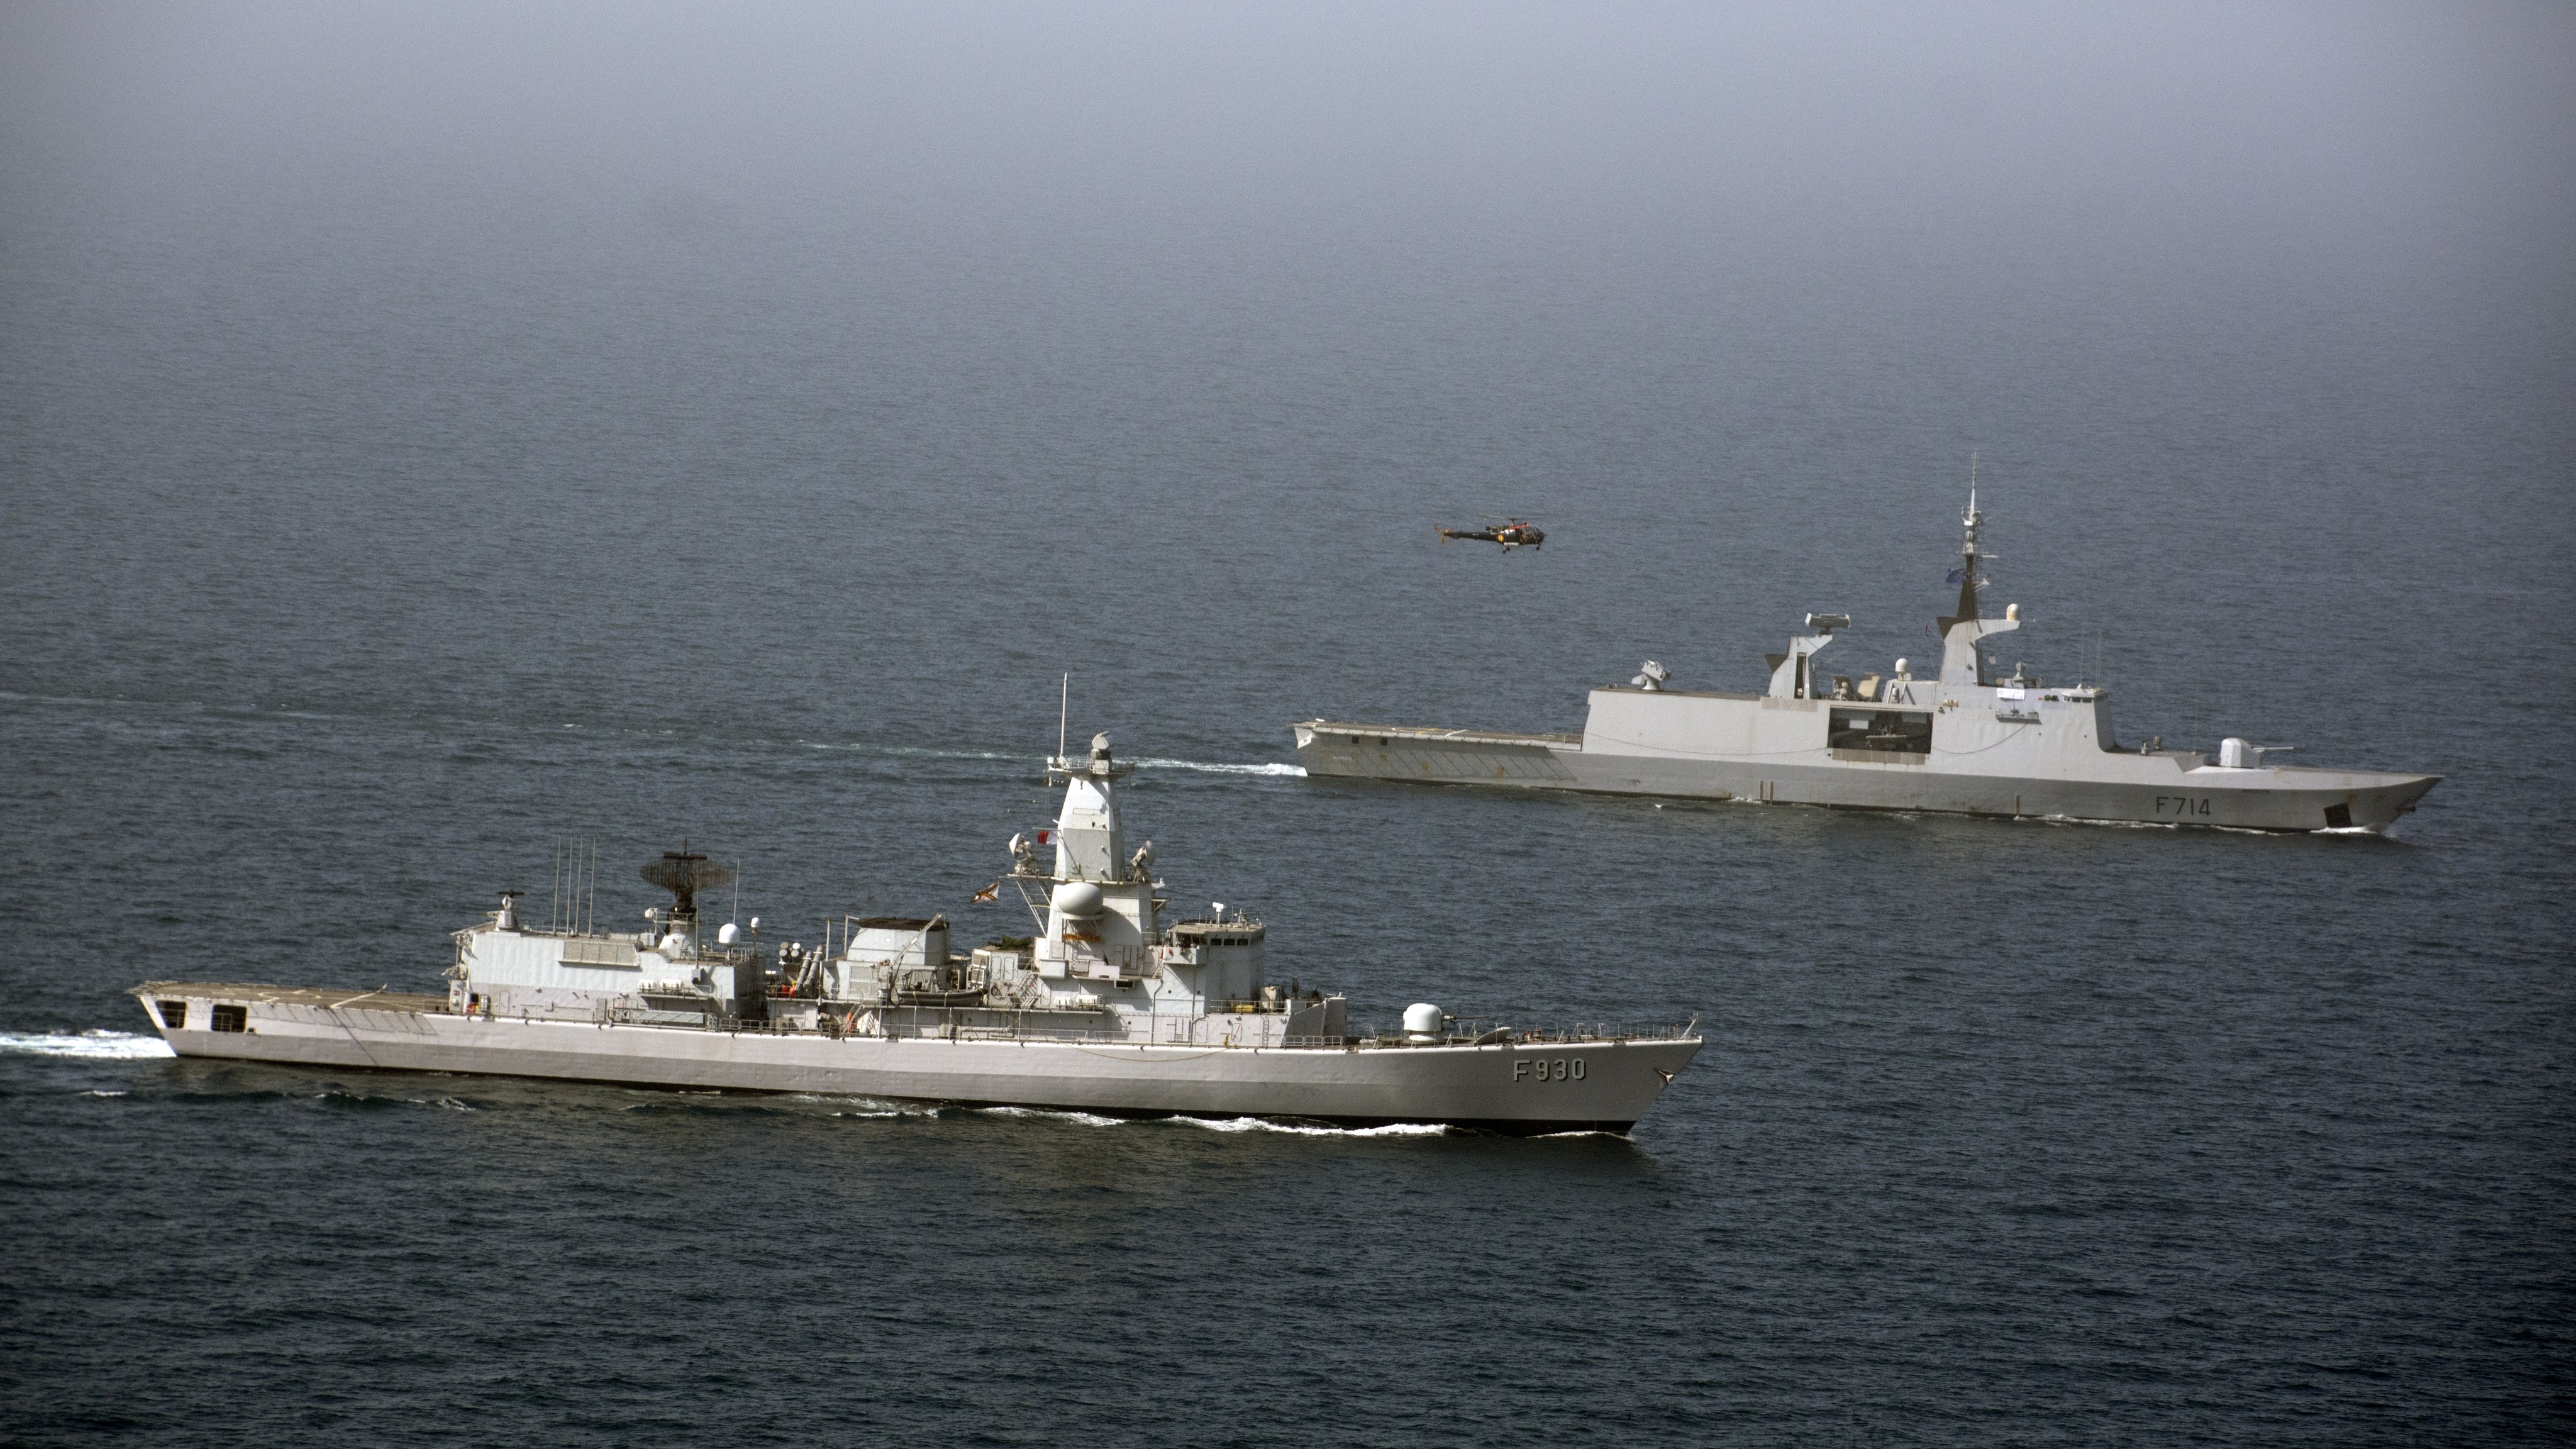 Belgian Navy's Leopold I Joined EMASOH (European-led Maritime Awareness in the Strait of Hormuz)